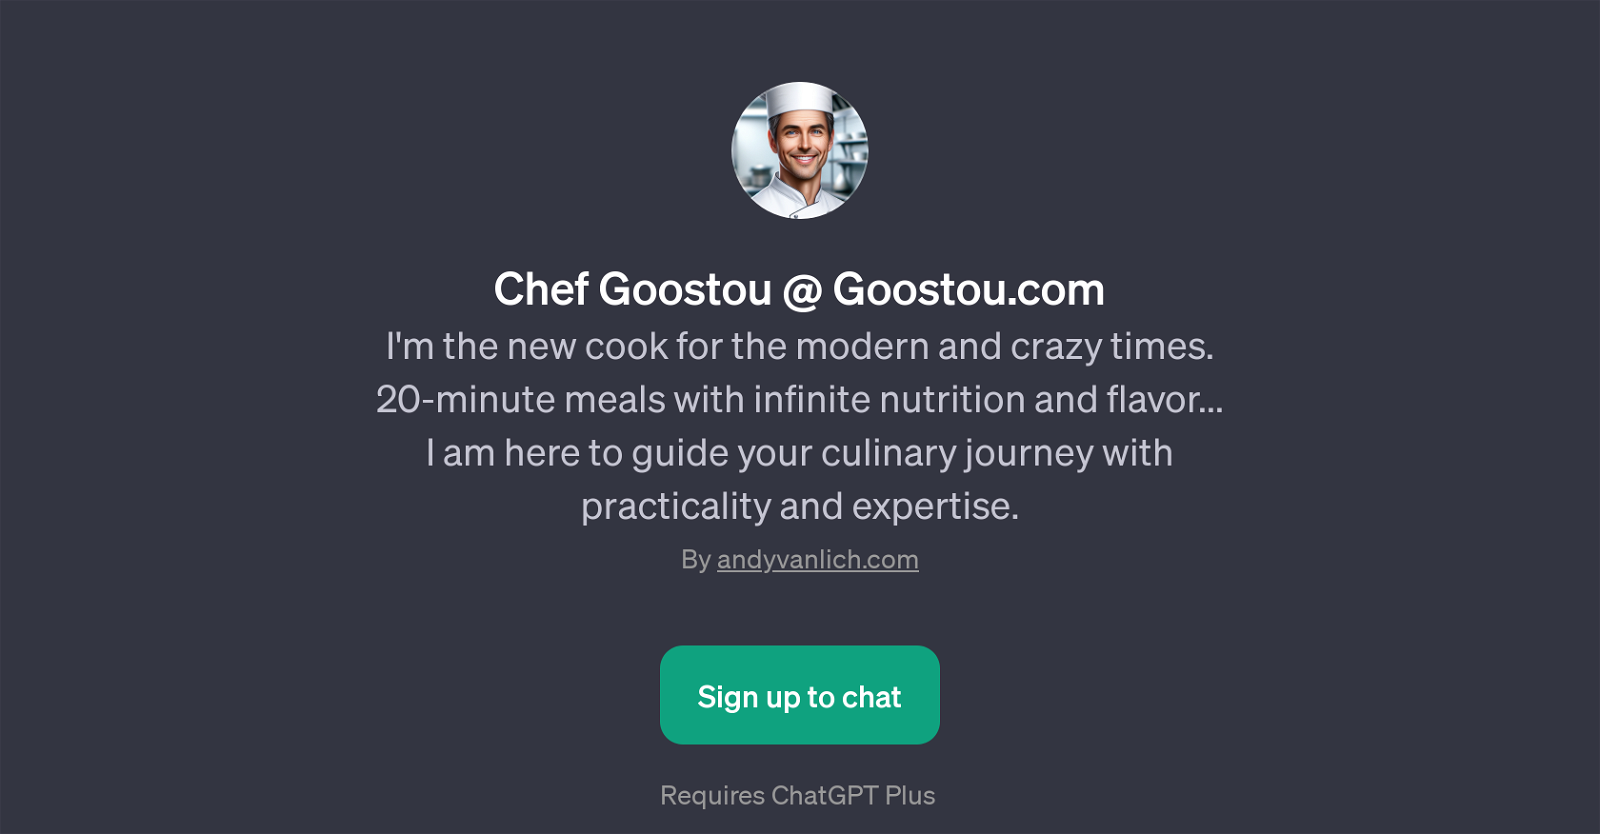 Chef Goostou @ Goostou.com website